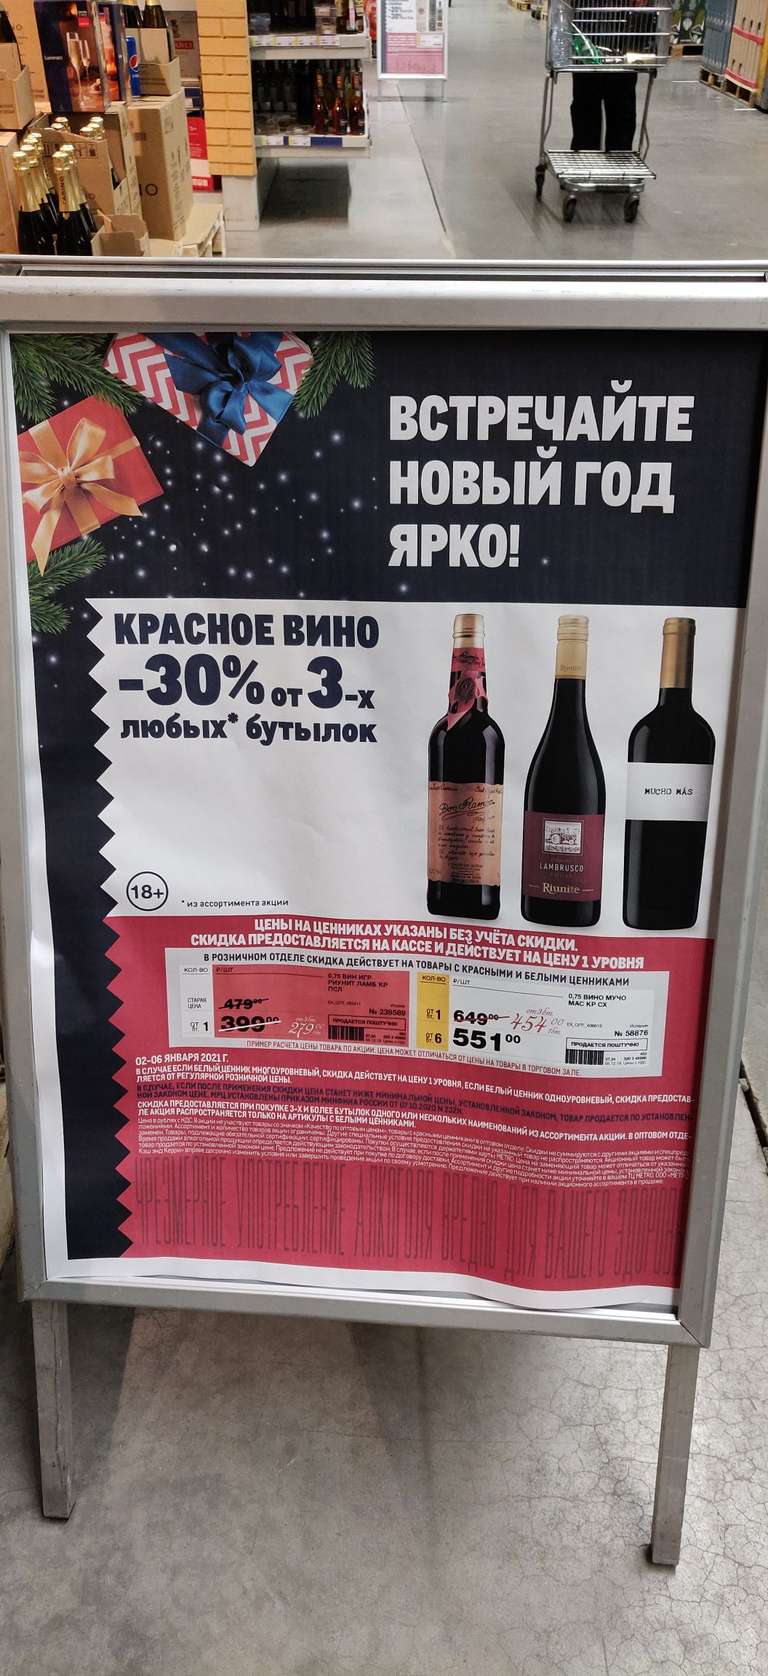 Cкидка 30% на красное вино при покупке от 3-х бутылок